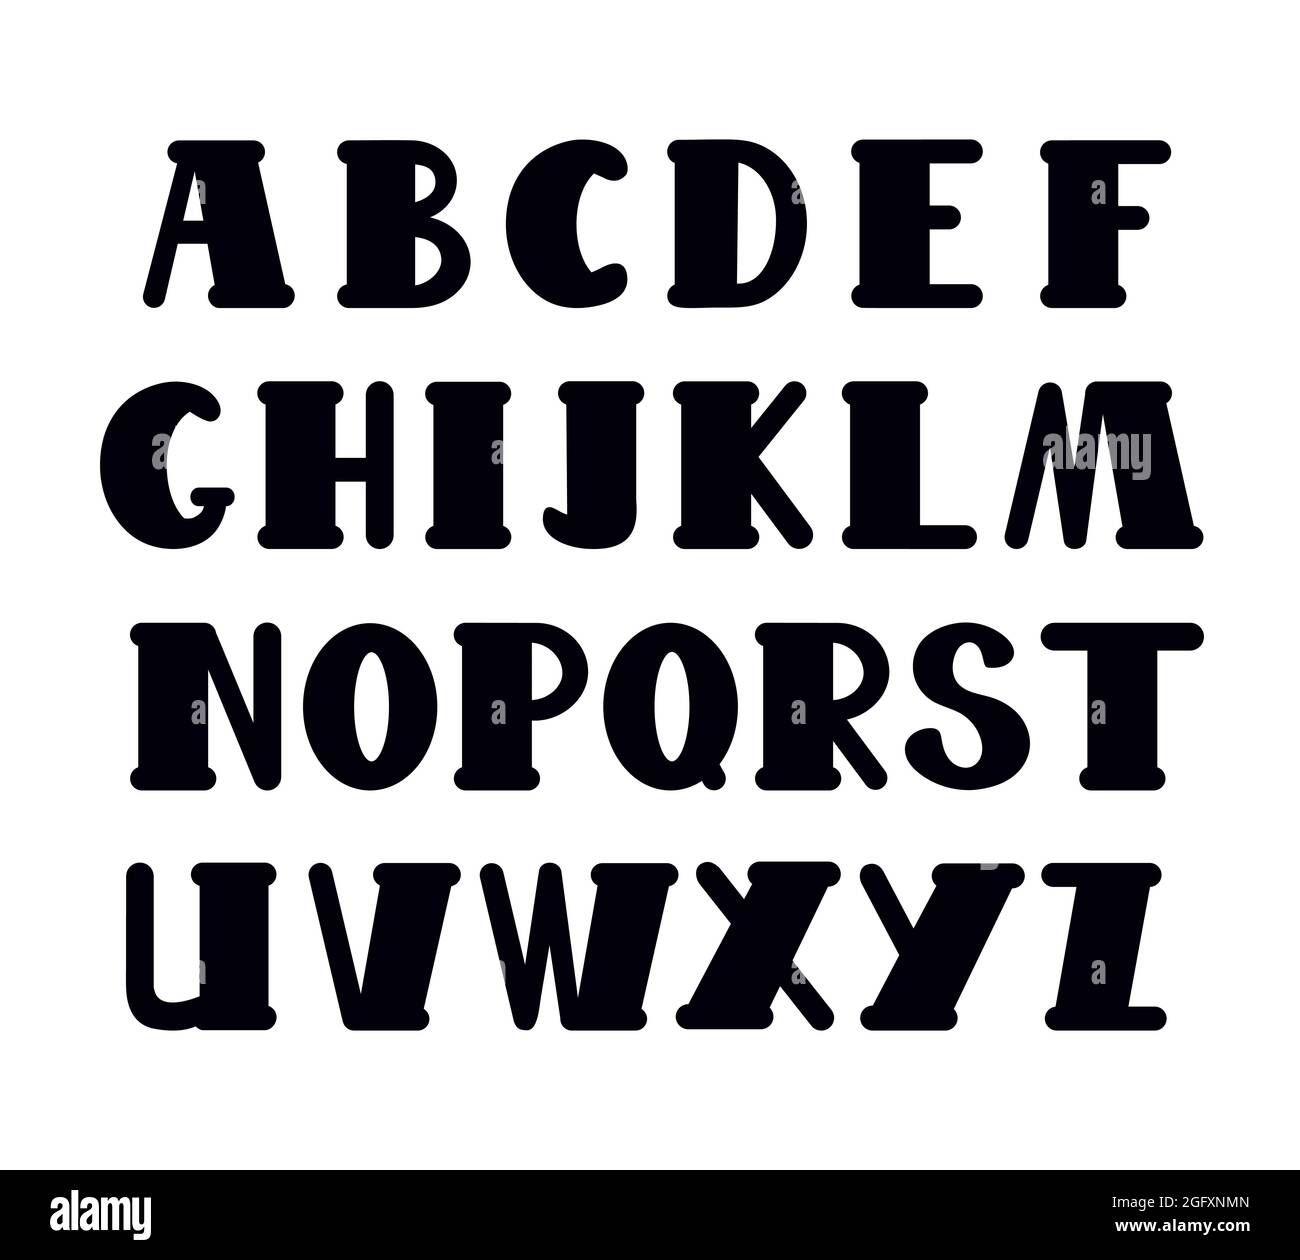 Letras mayúsculas dibujadas en negro del alfabeto inglés en estilo